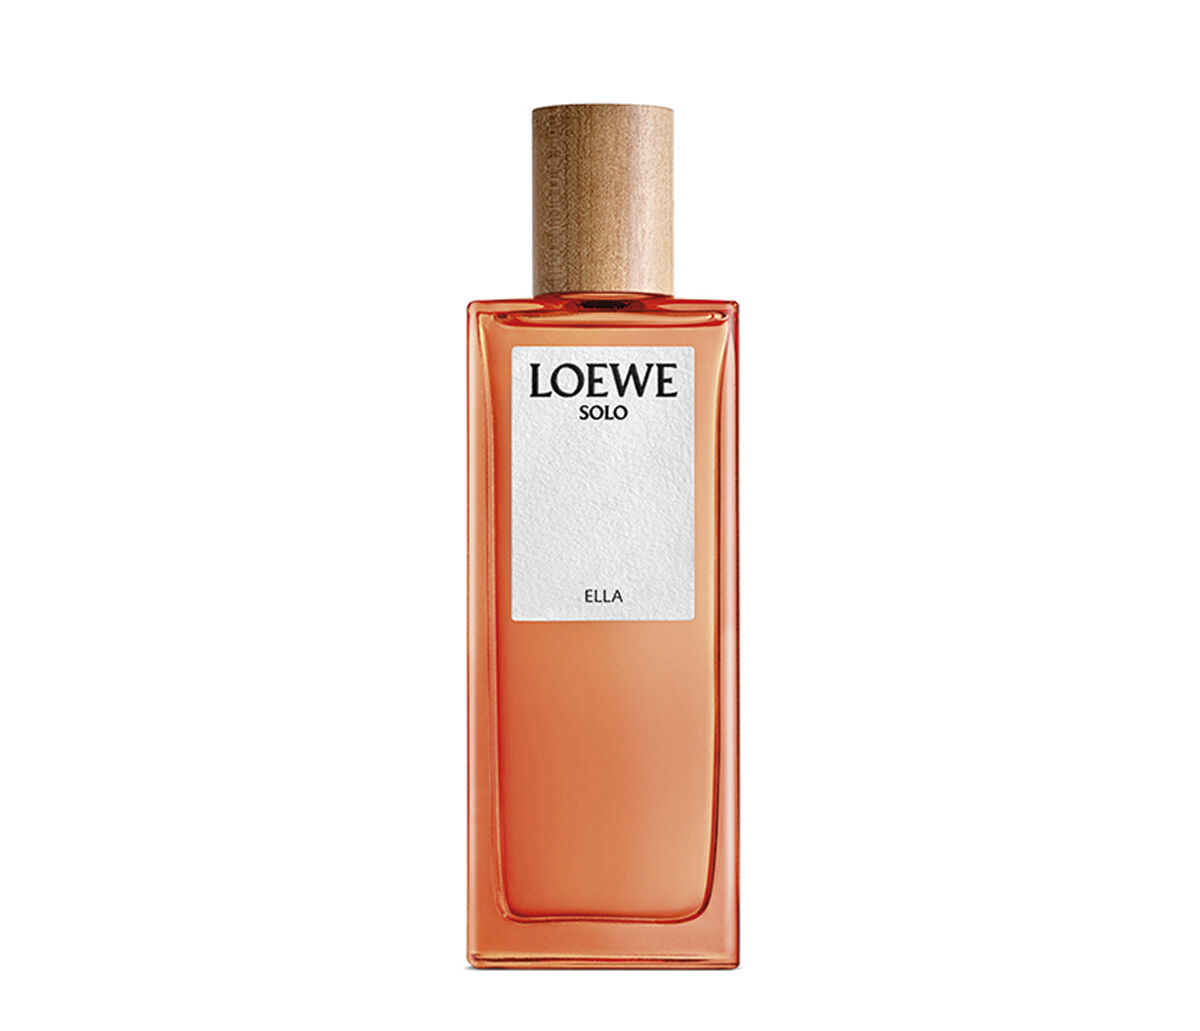 LOEWE Solo Ella EDP | LOEWE Perfumes